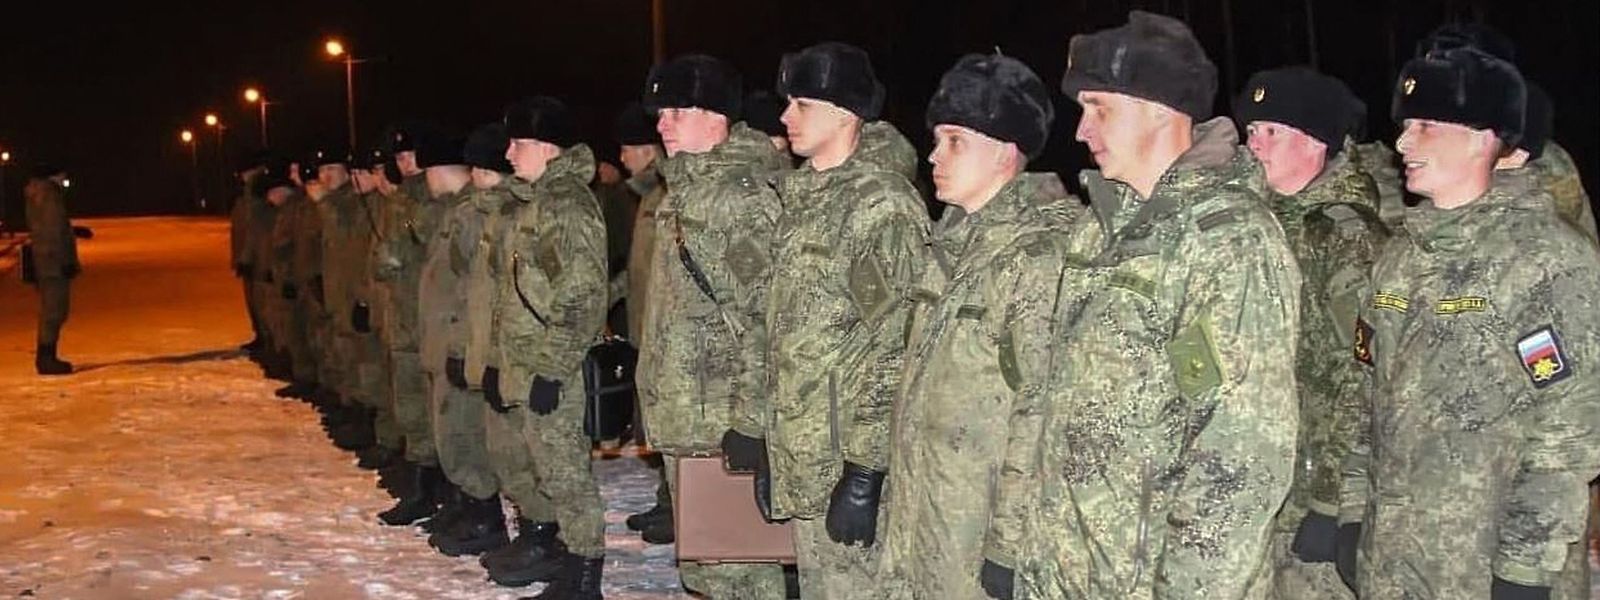 Inmitten des Konflikts mit der Ukraine hat Russland Truppen nach Belarus verlegt.